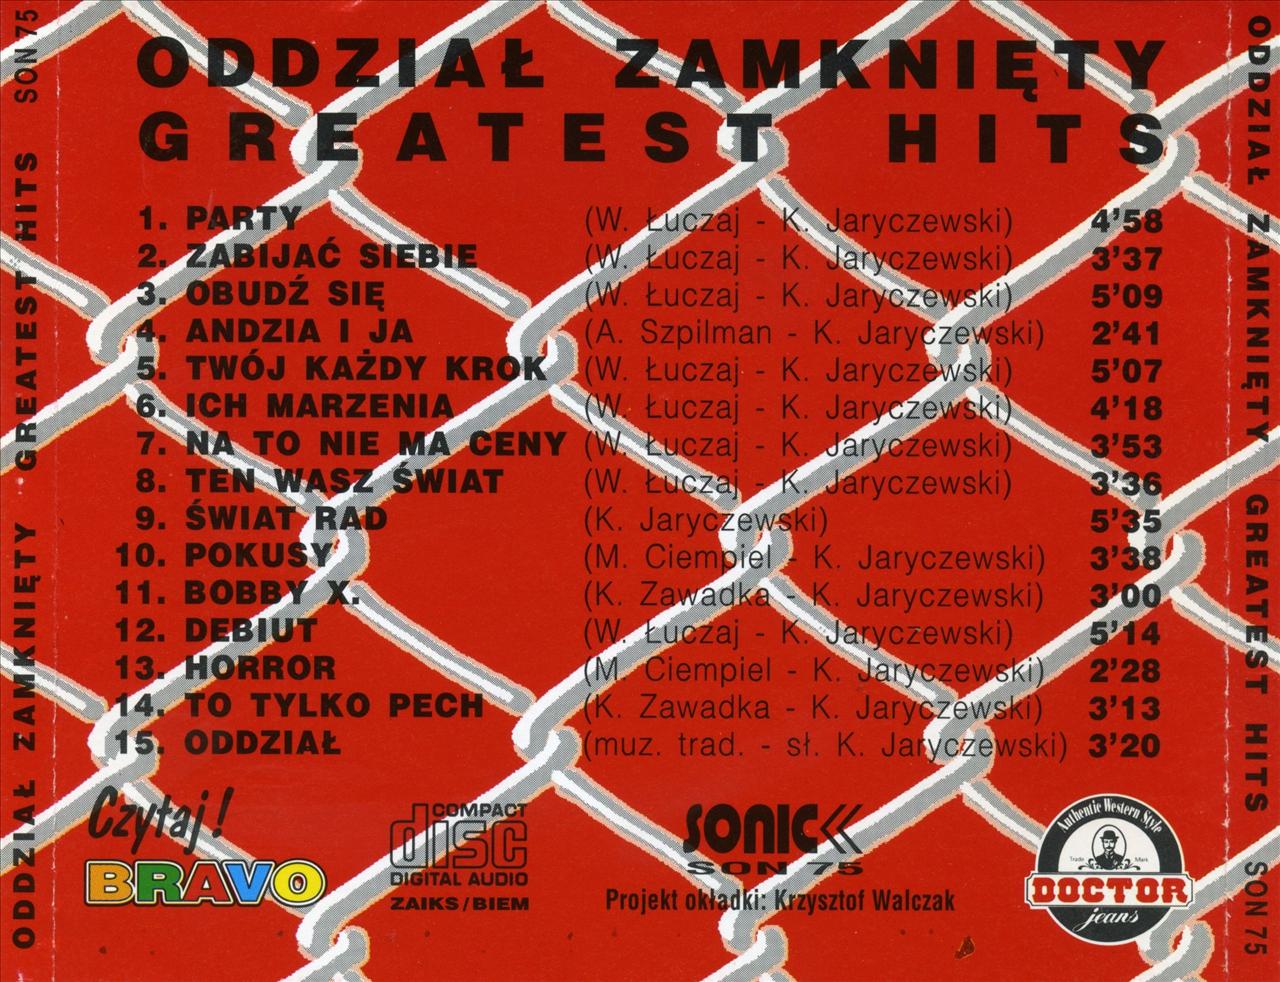 Oddział Zamknięty - Greatest Hits 1994 - oddział.b.jpg